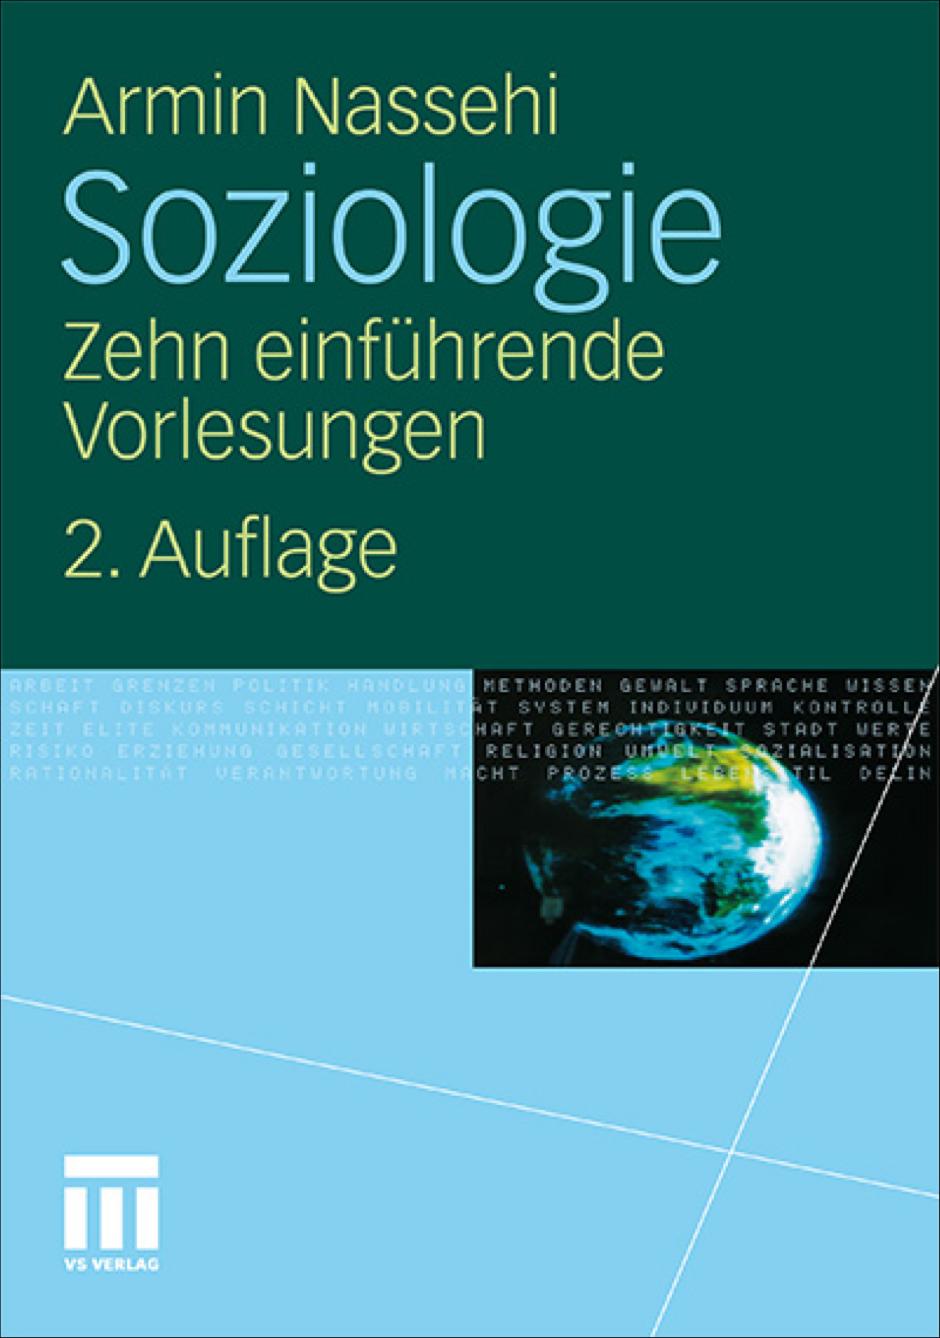 Literaturempfehlung: Armin Nassehi: Soziologie.